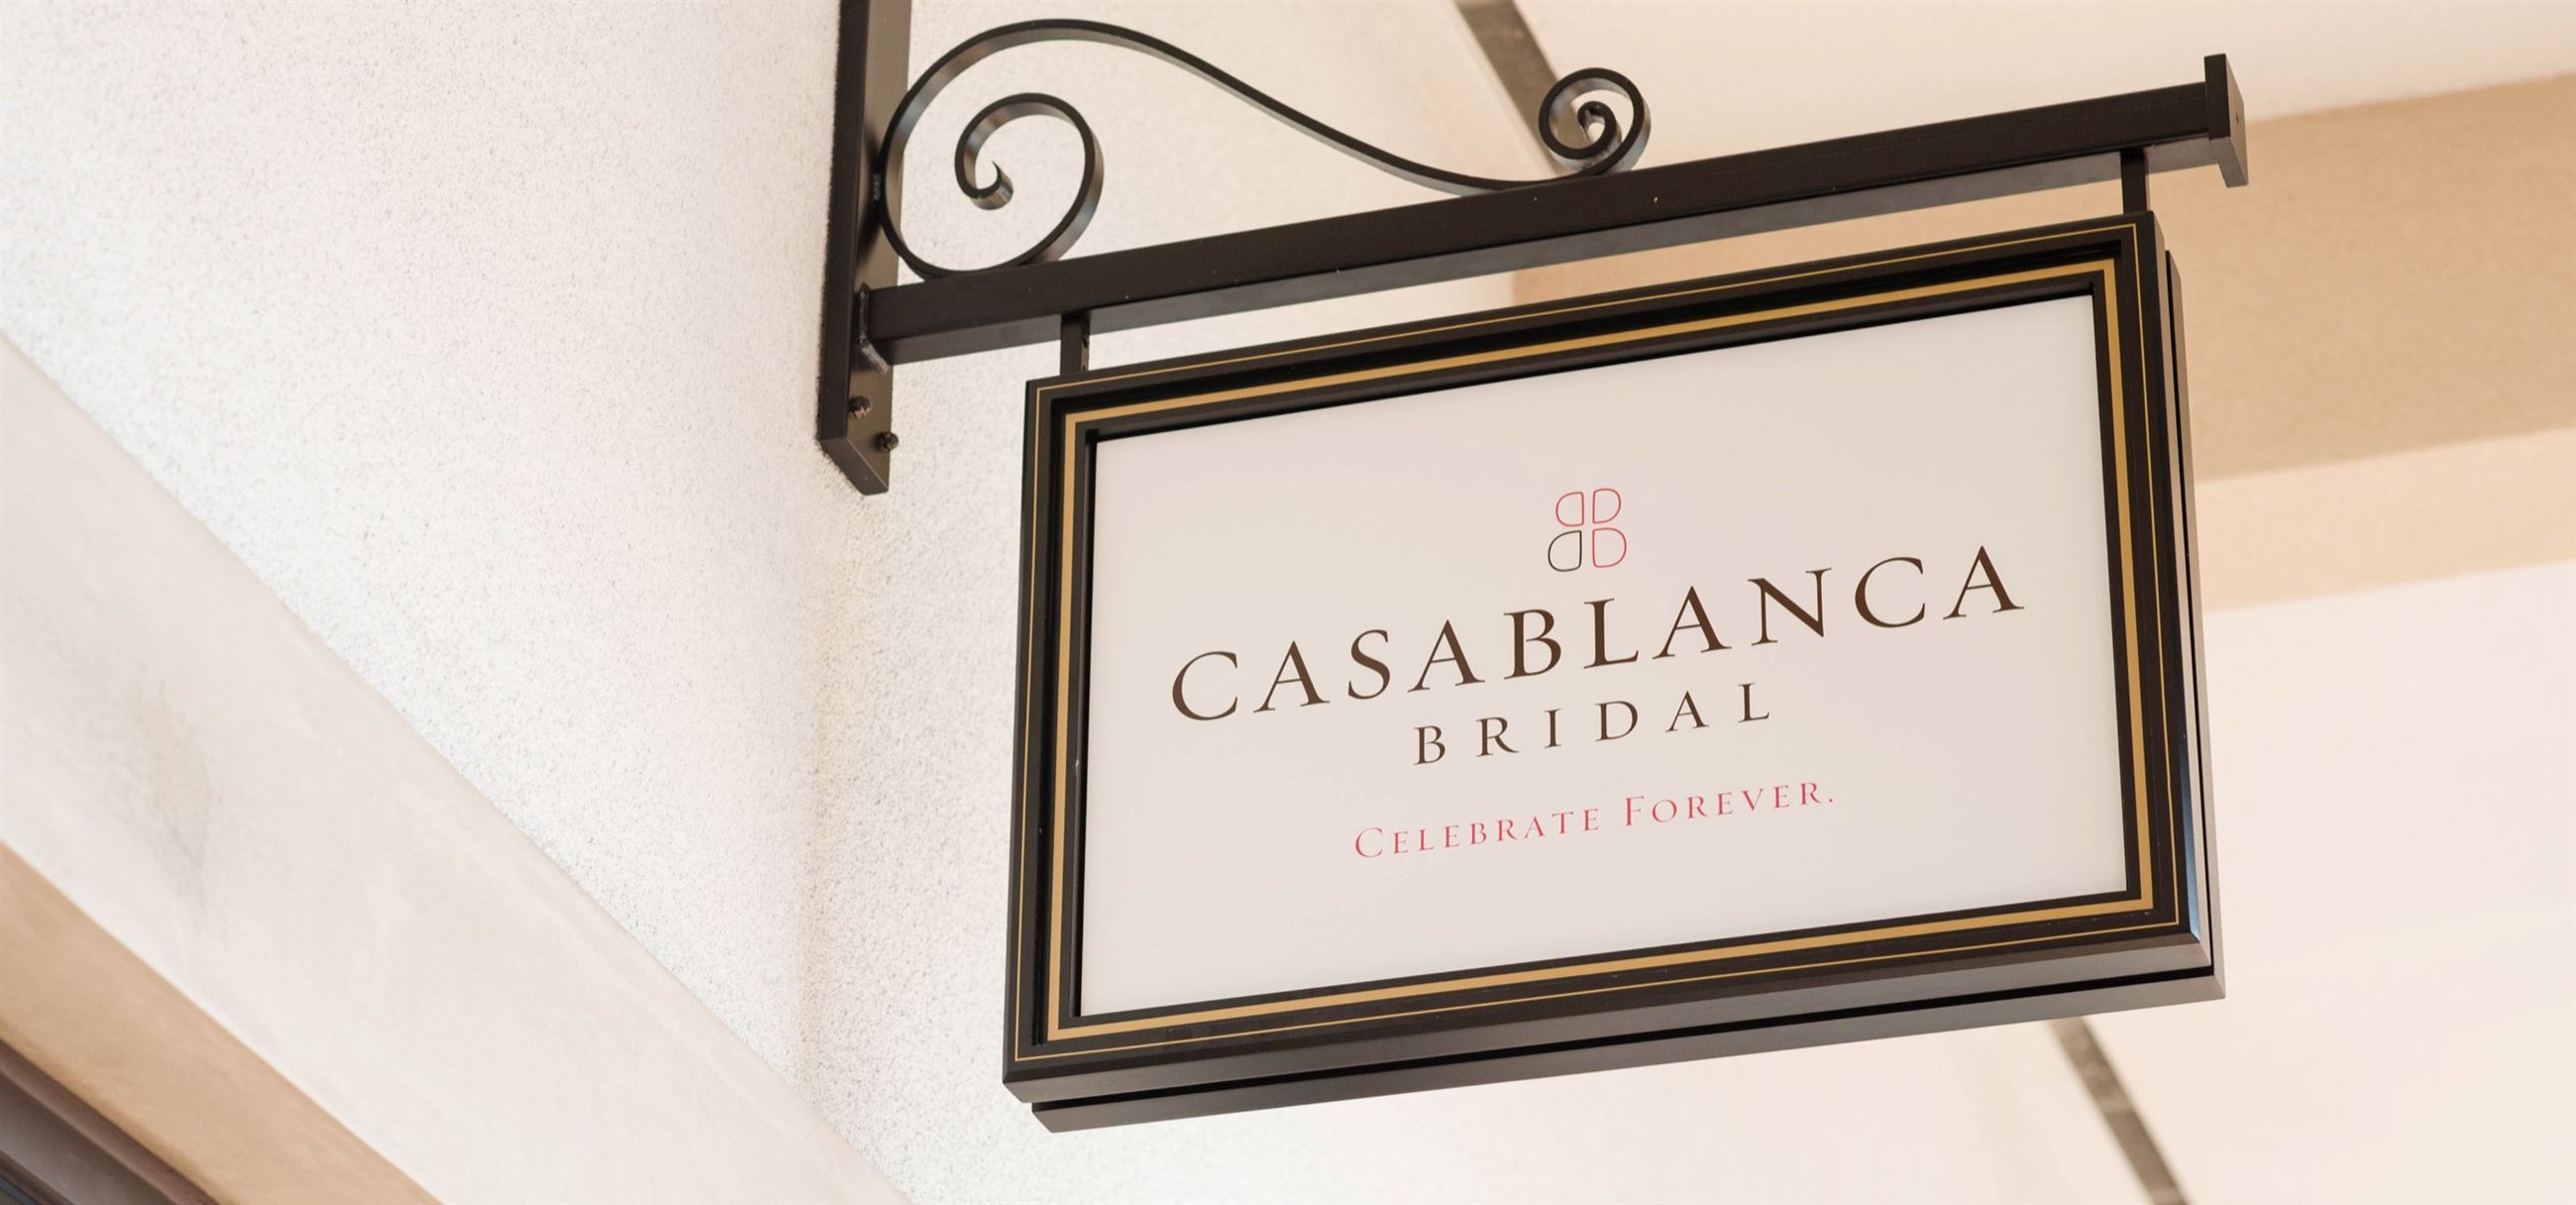 CASABLANCA BRIDAL signboard